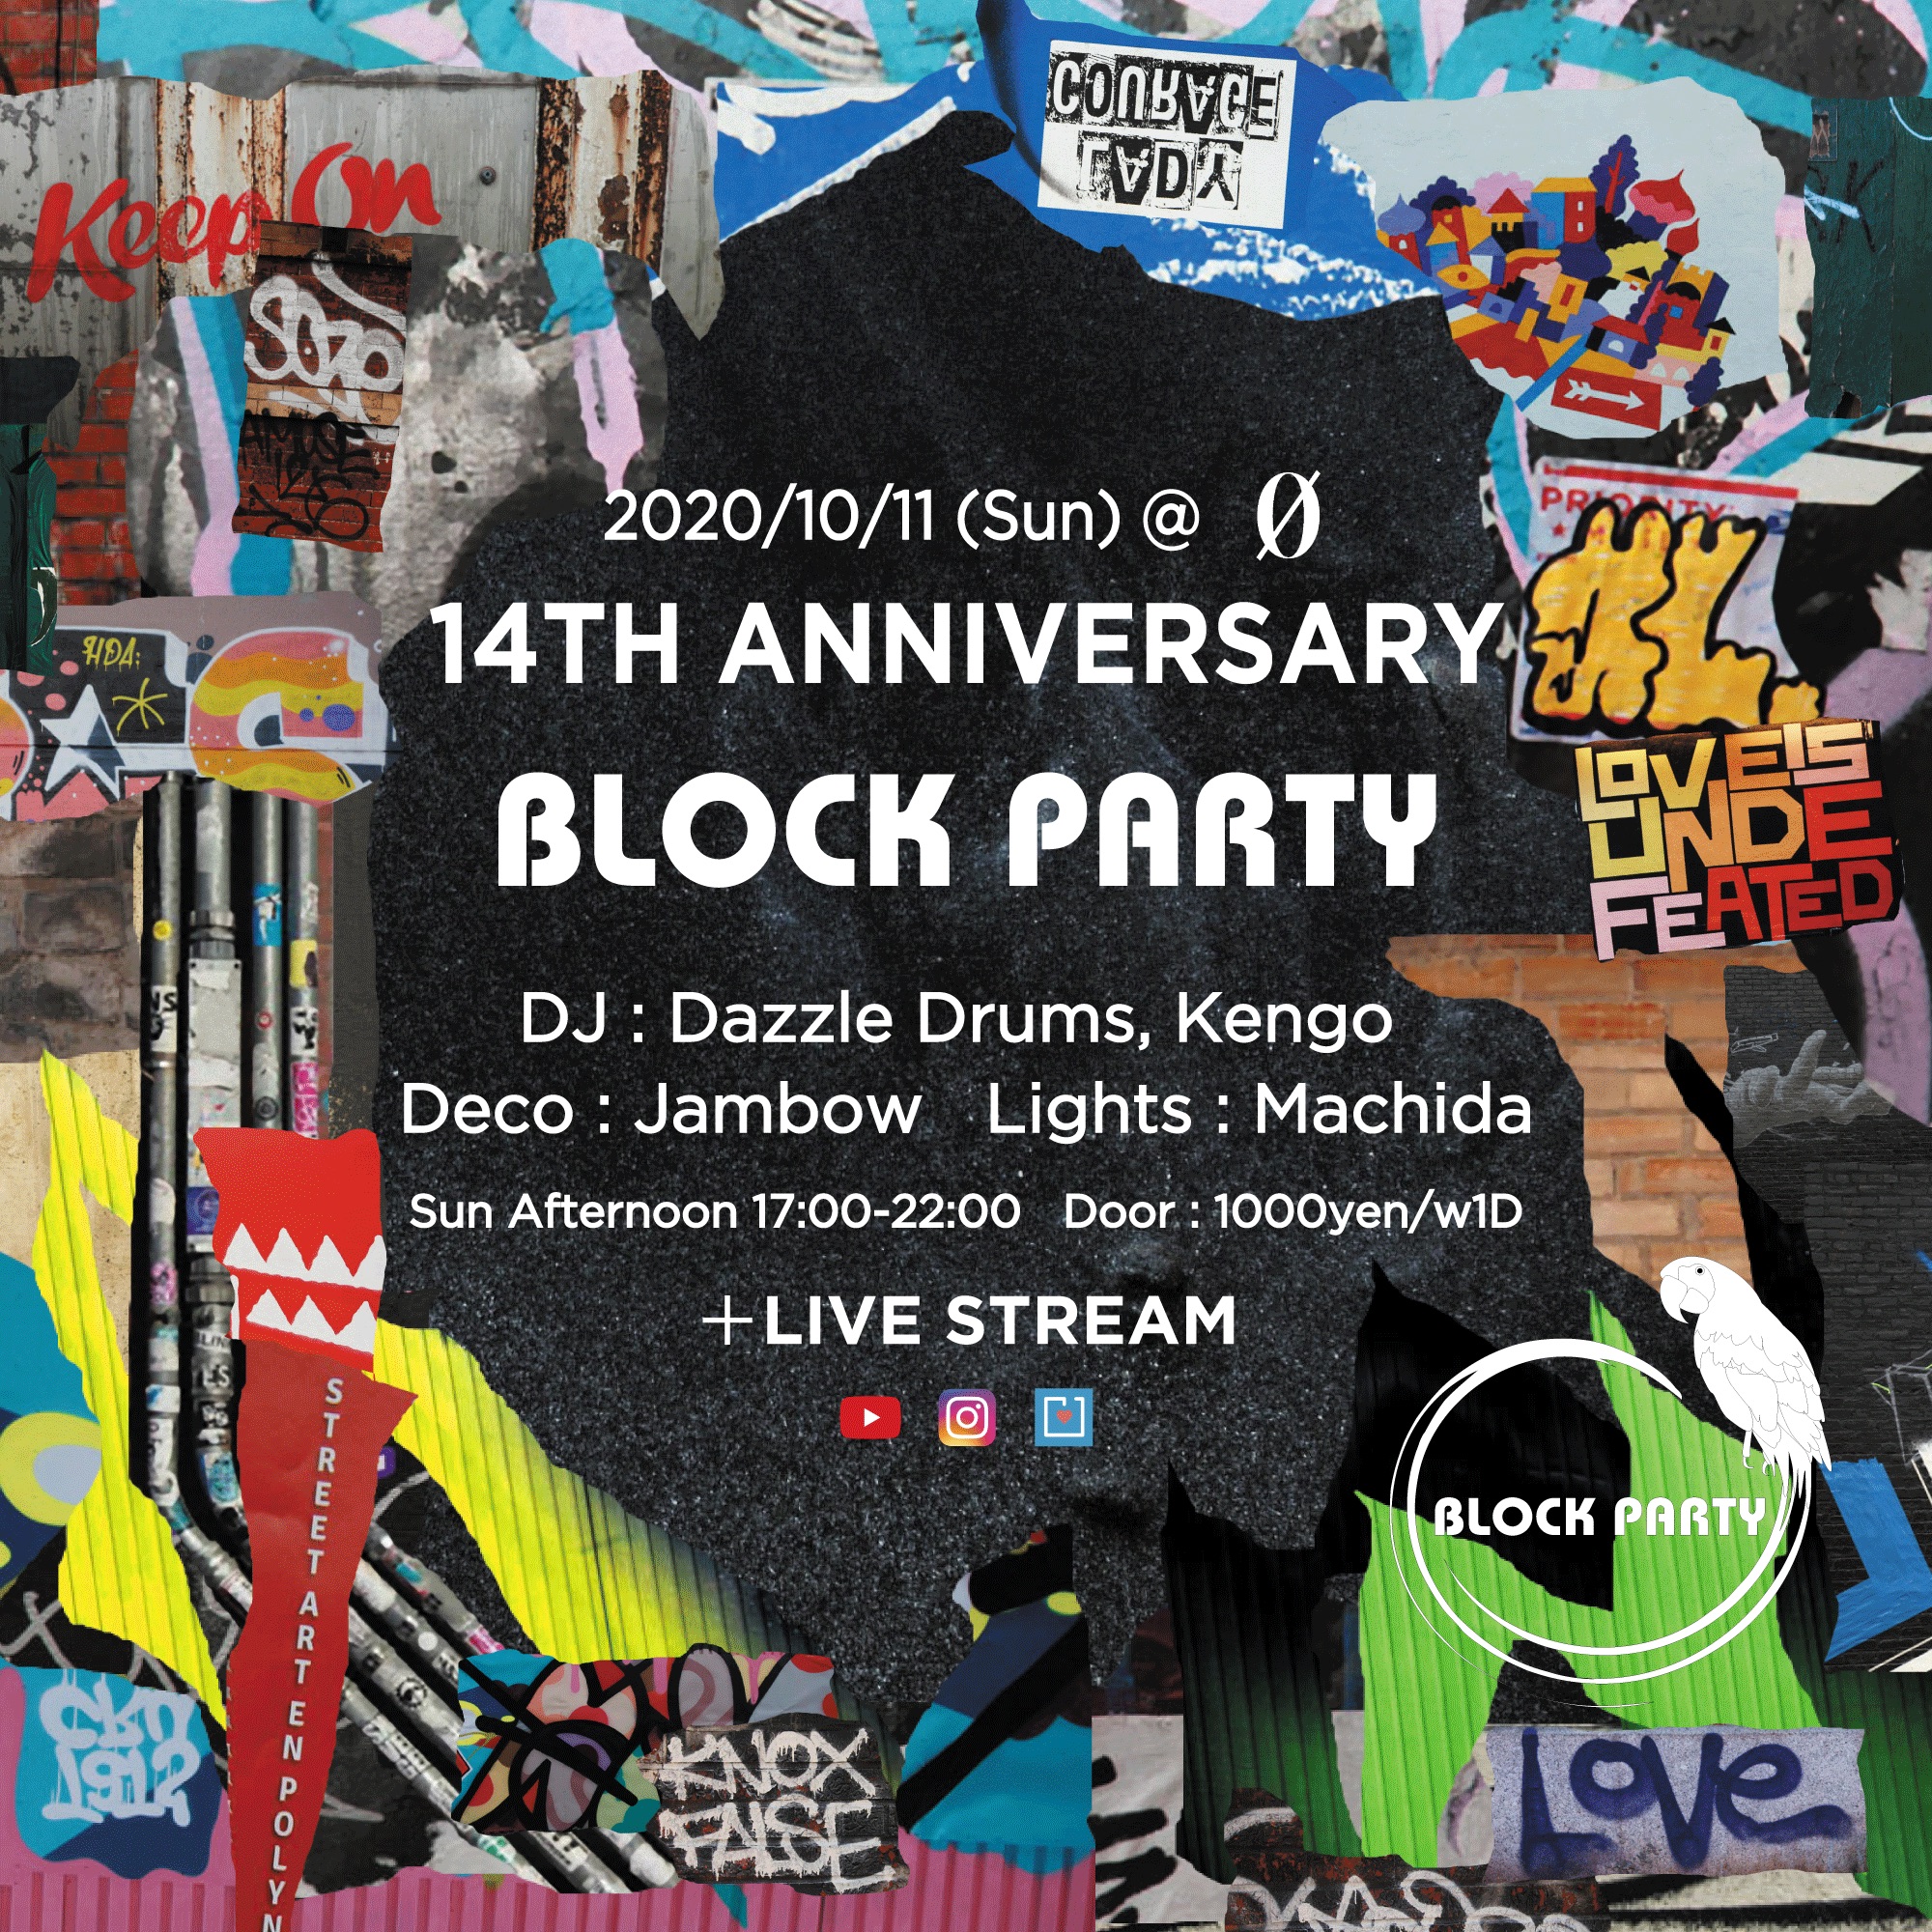 Block Party “14th Anniversary” + Live Stream @ 0 Zero